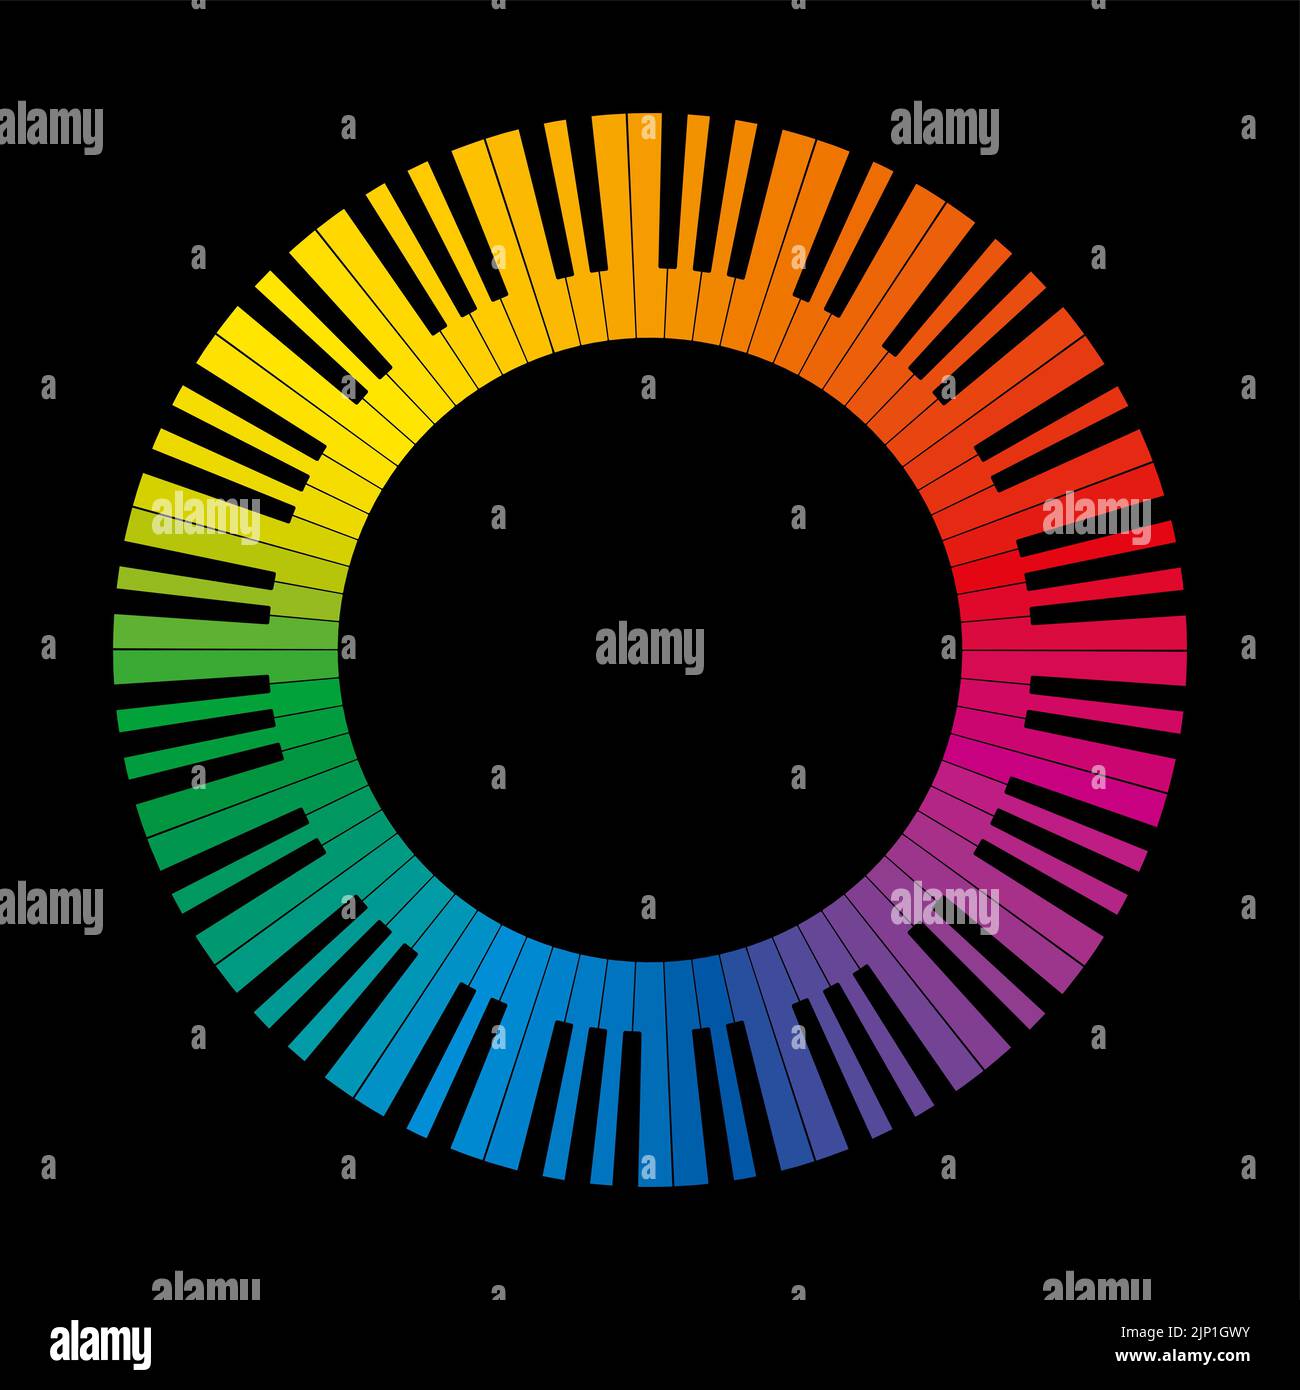 Colorido círculo de teclado musical, hecho de patrones de octava conectados. Marco construido a partir de las teclas en blanco y negro de un teclado de piano. Foto de stock